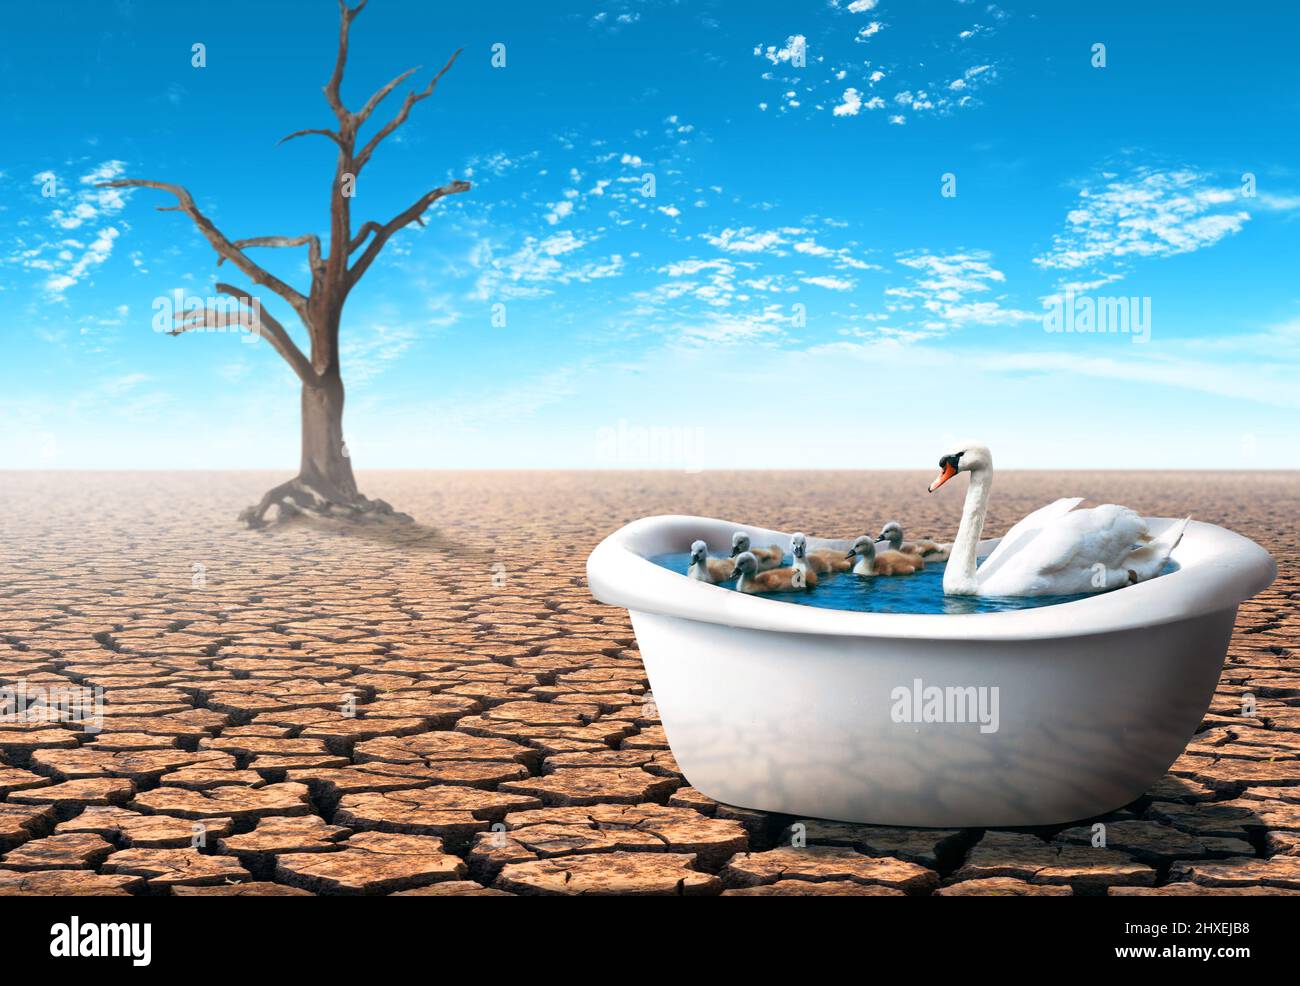 Cygne avec ses bébés dans une baignoire dans un désert sec. Concept du thème de la pandémie. Banque D'Images